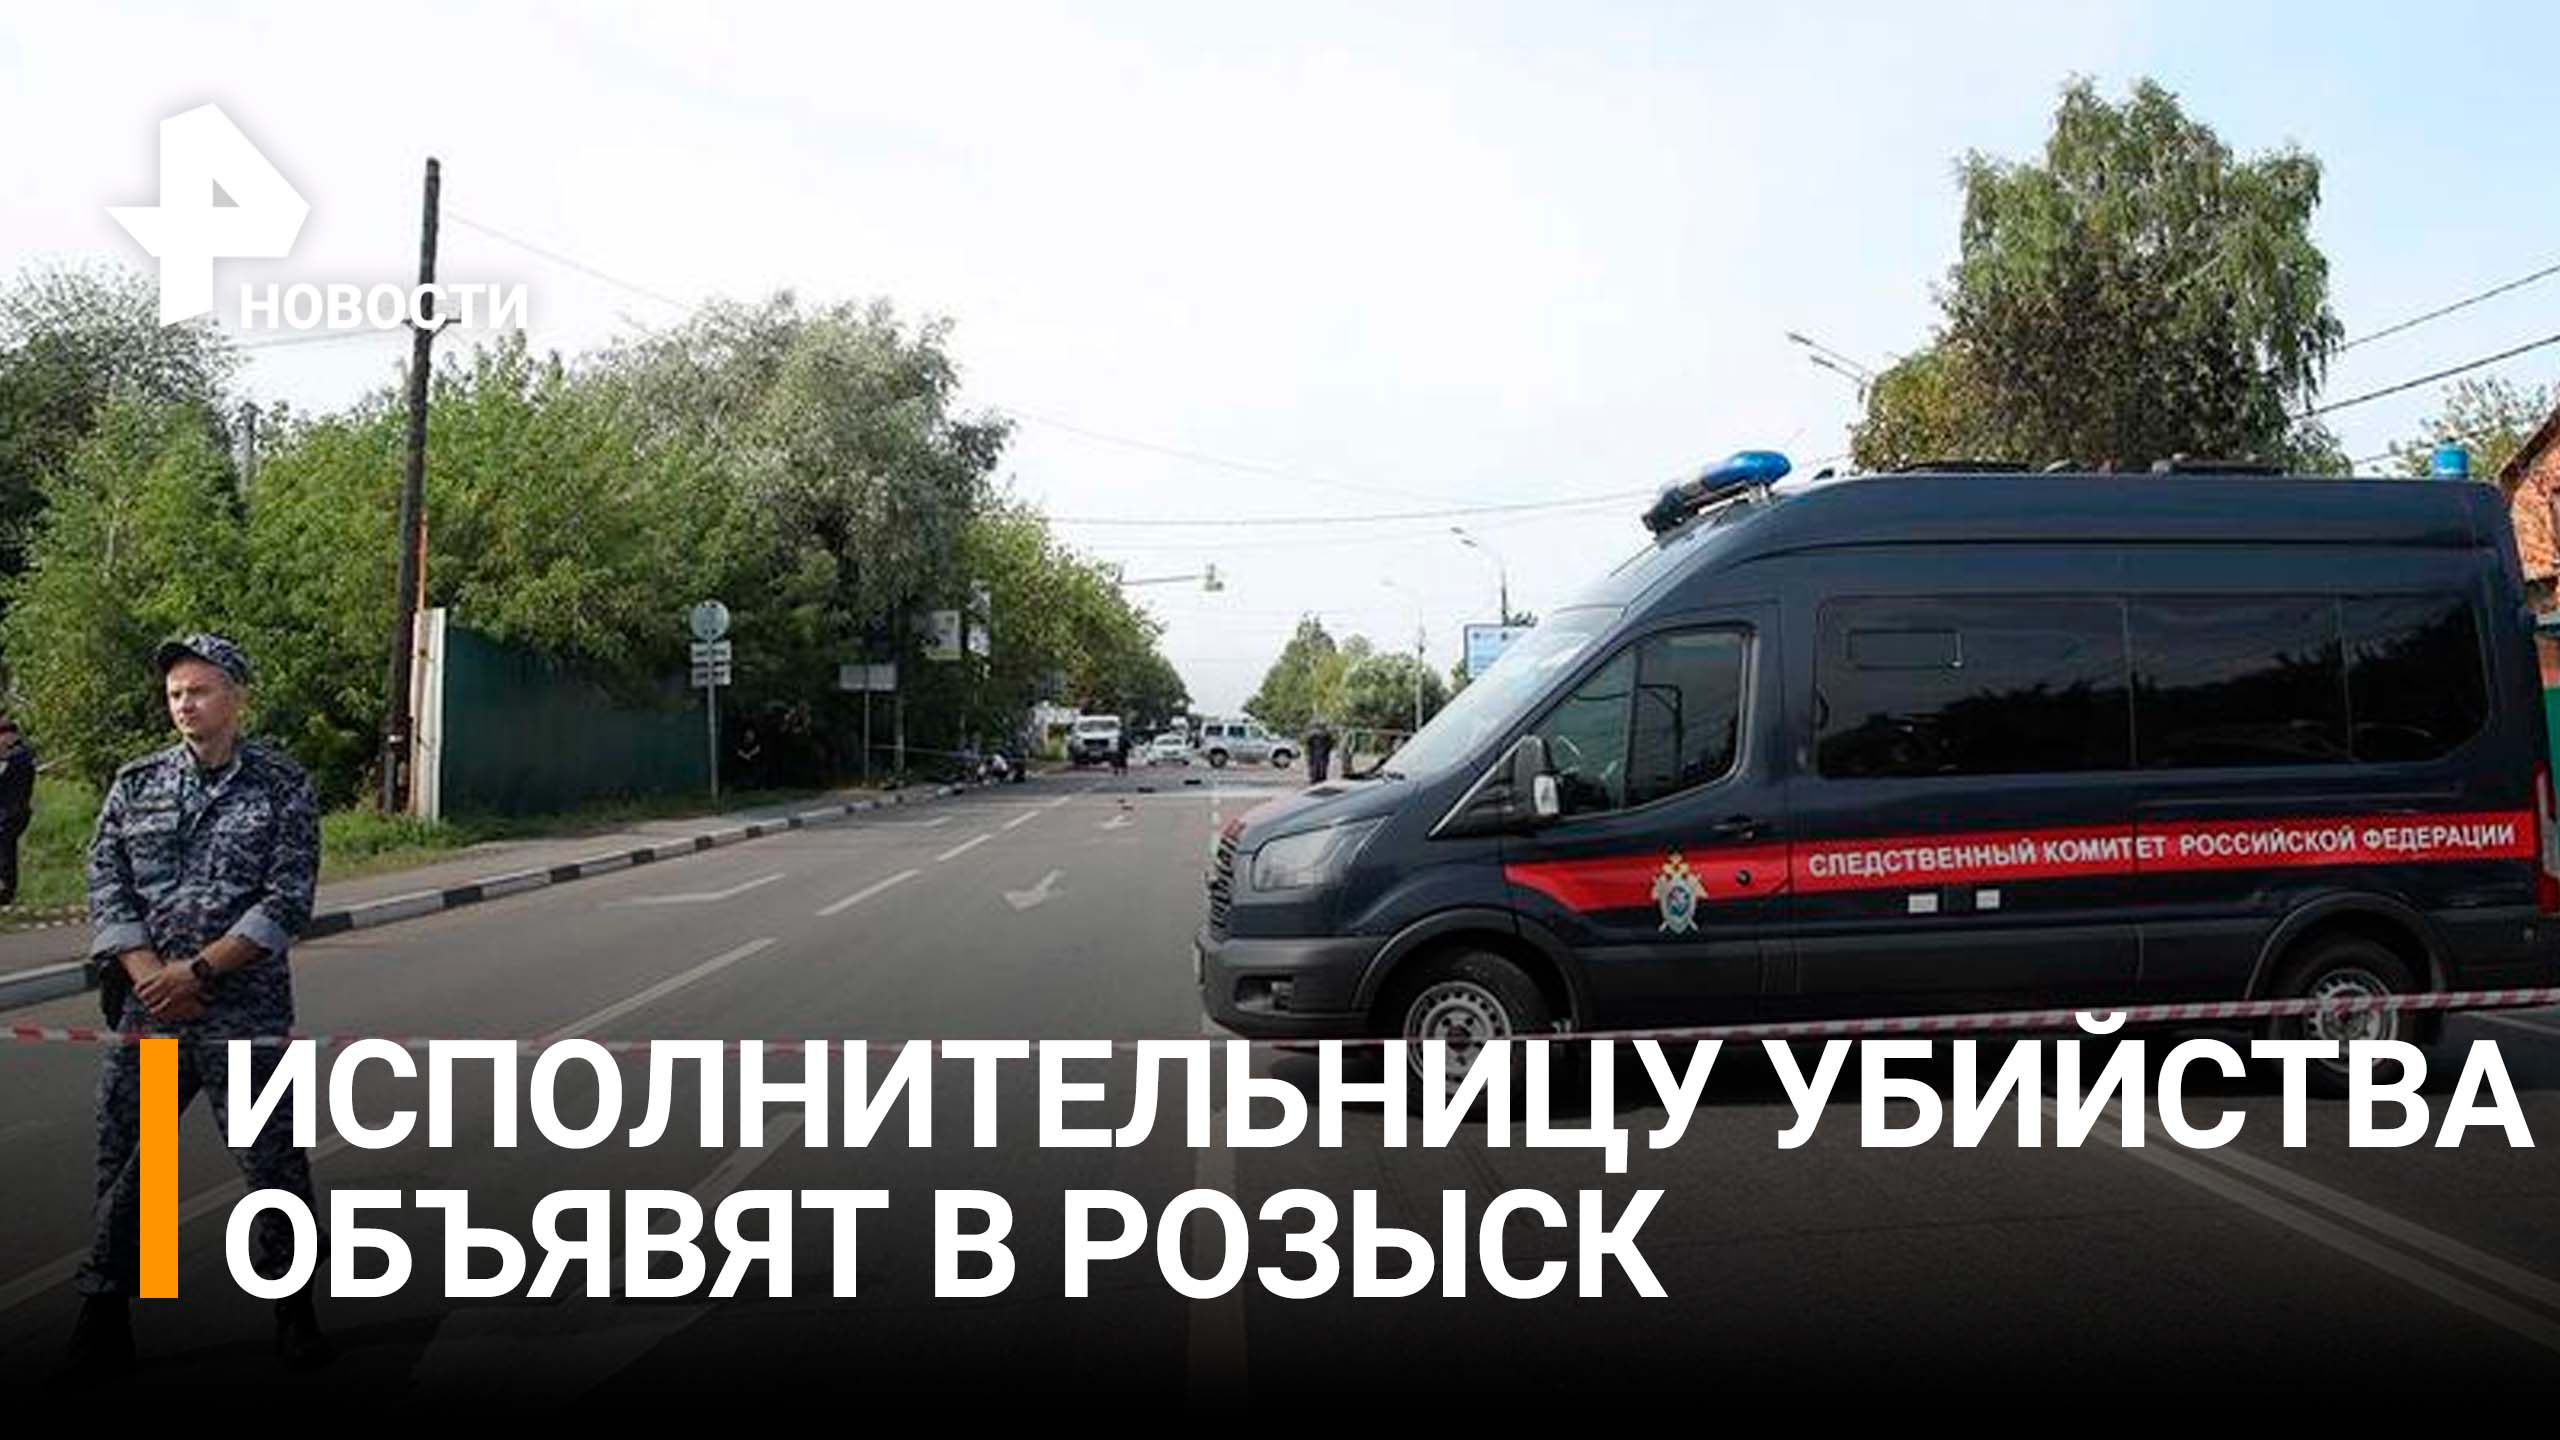 Исполнительницу убийства Дугиной объявят в розыск / РЕН Новости